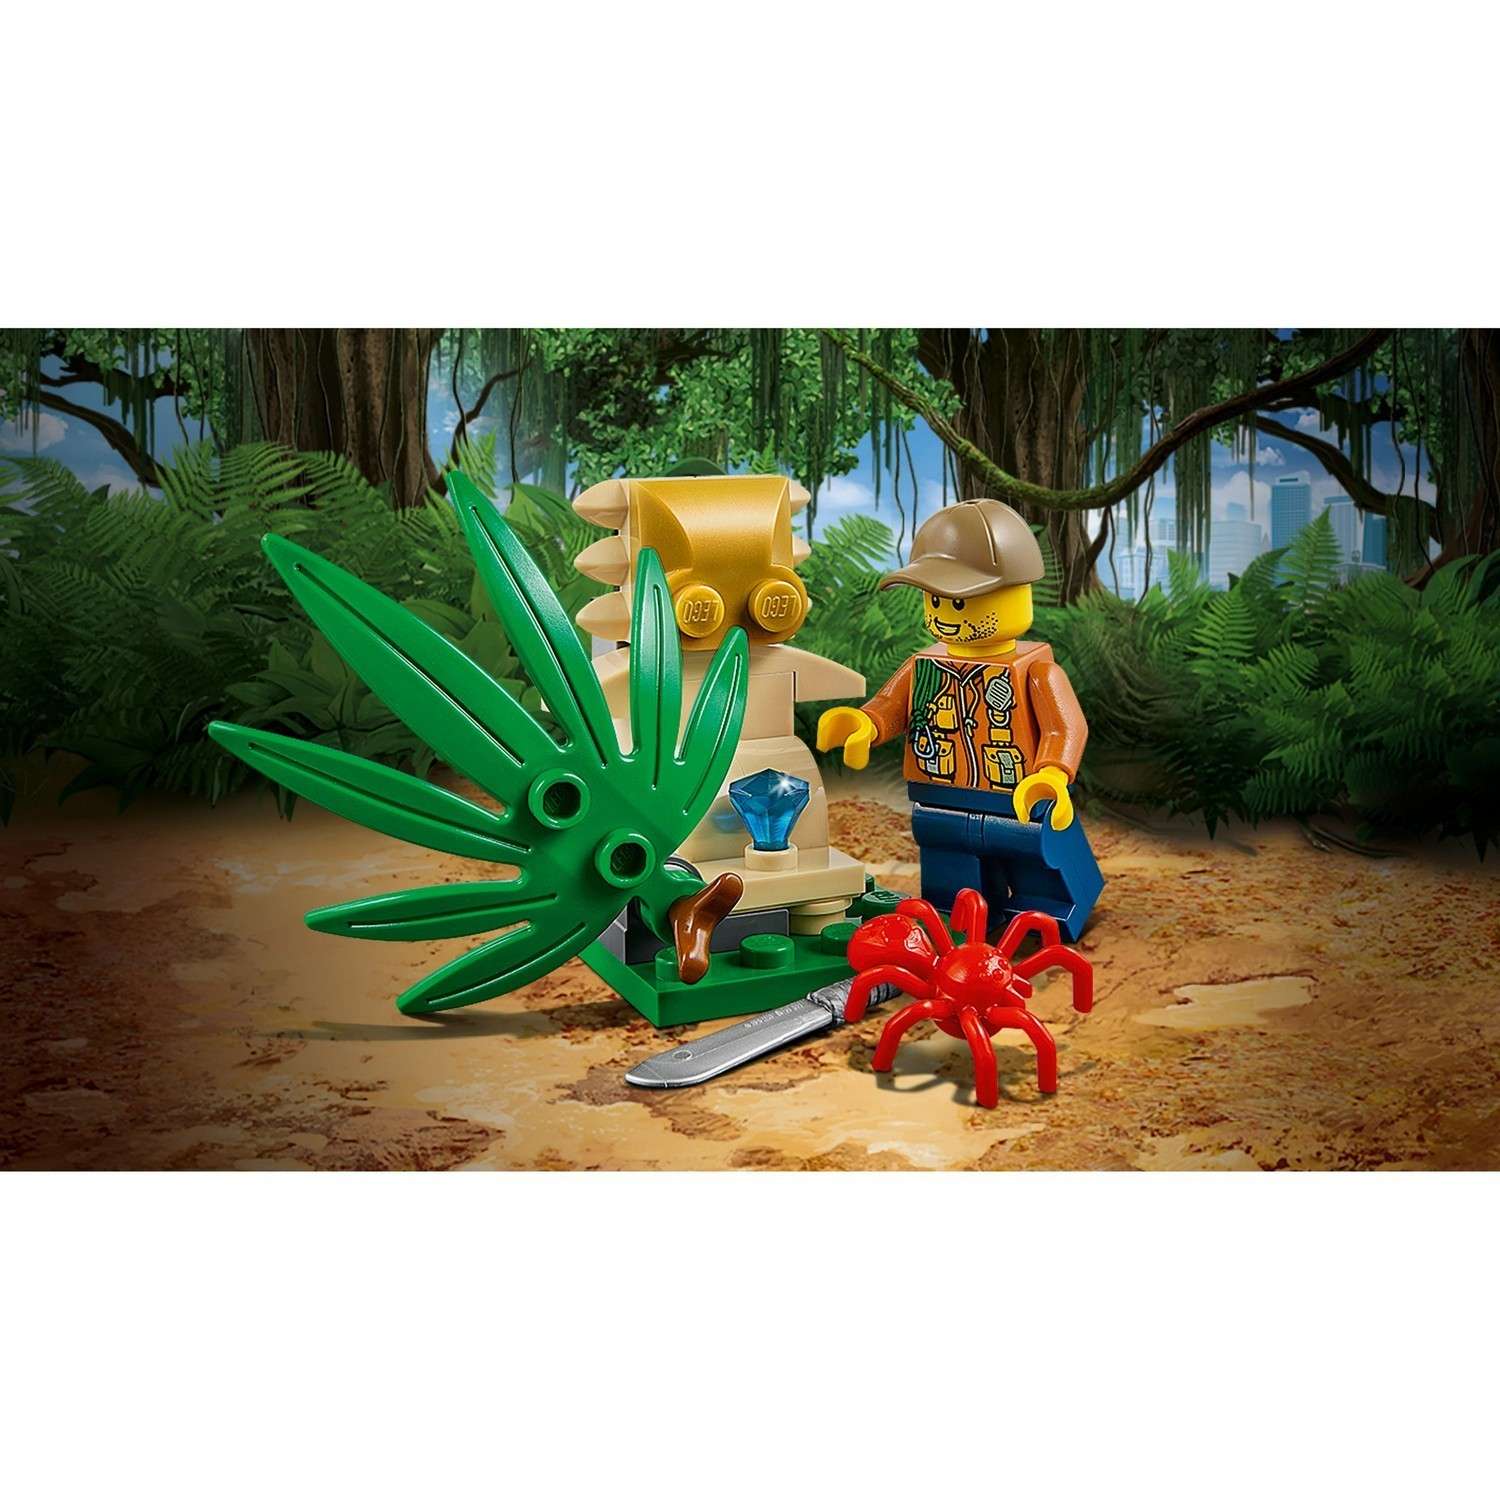 Конструктор LEGO City Jungle Explorers Багги для поездок по джунглям (60156) - фото 5